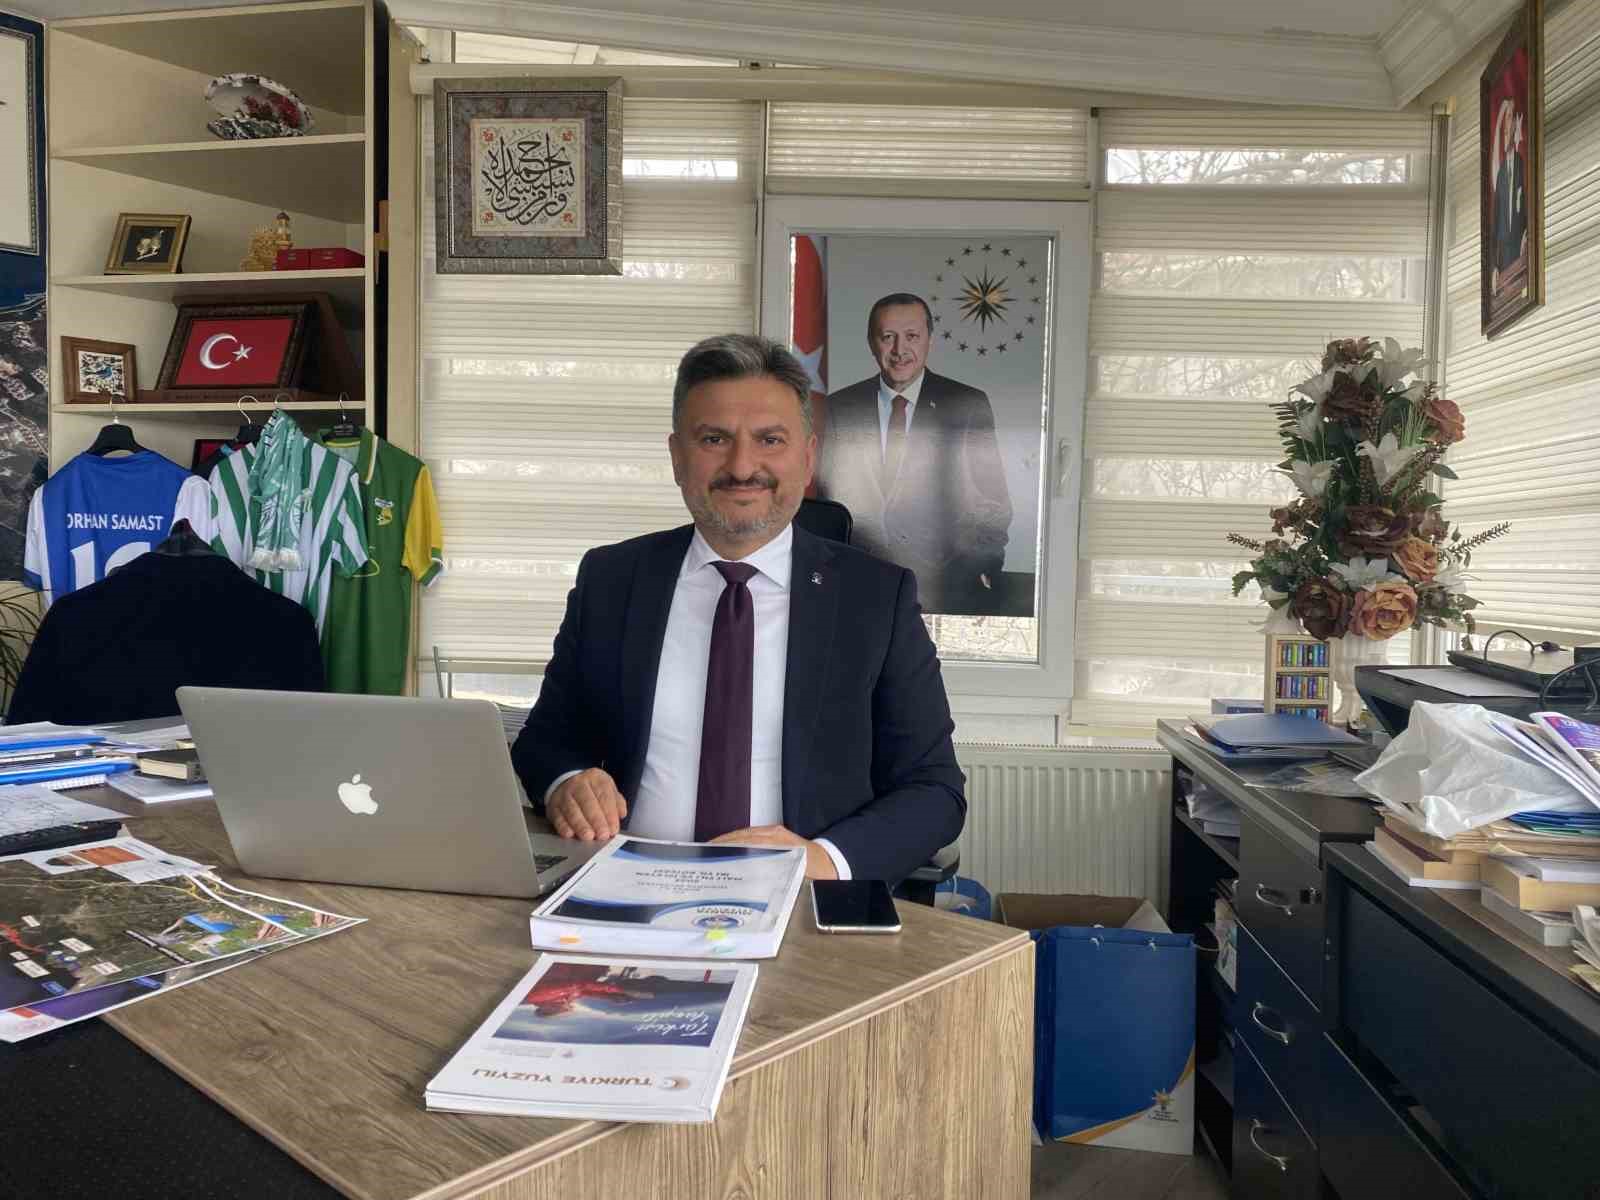 Ak Parti Mudanya İlçe Başkanı Orhan Samasttan Türkyılmaza Eleştiri